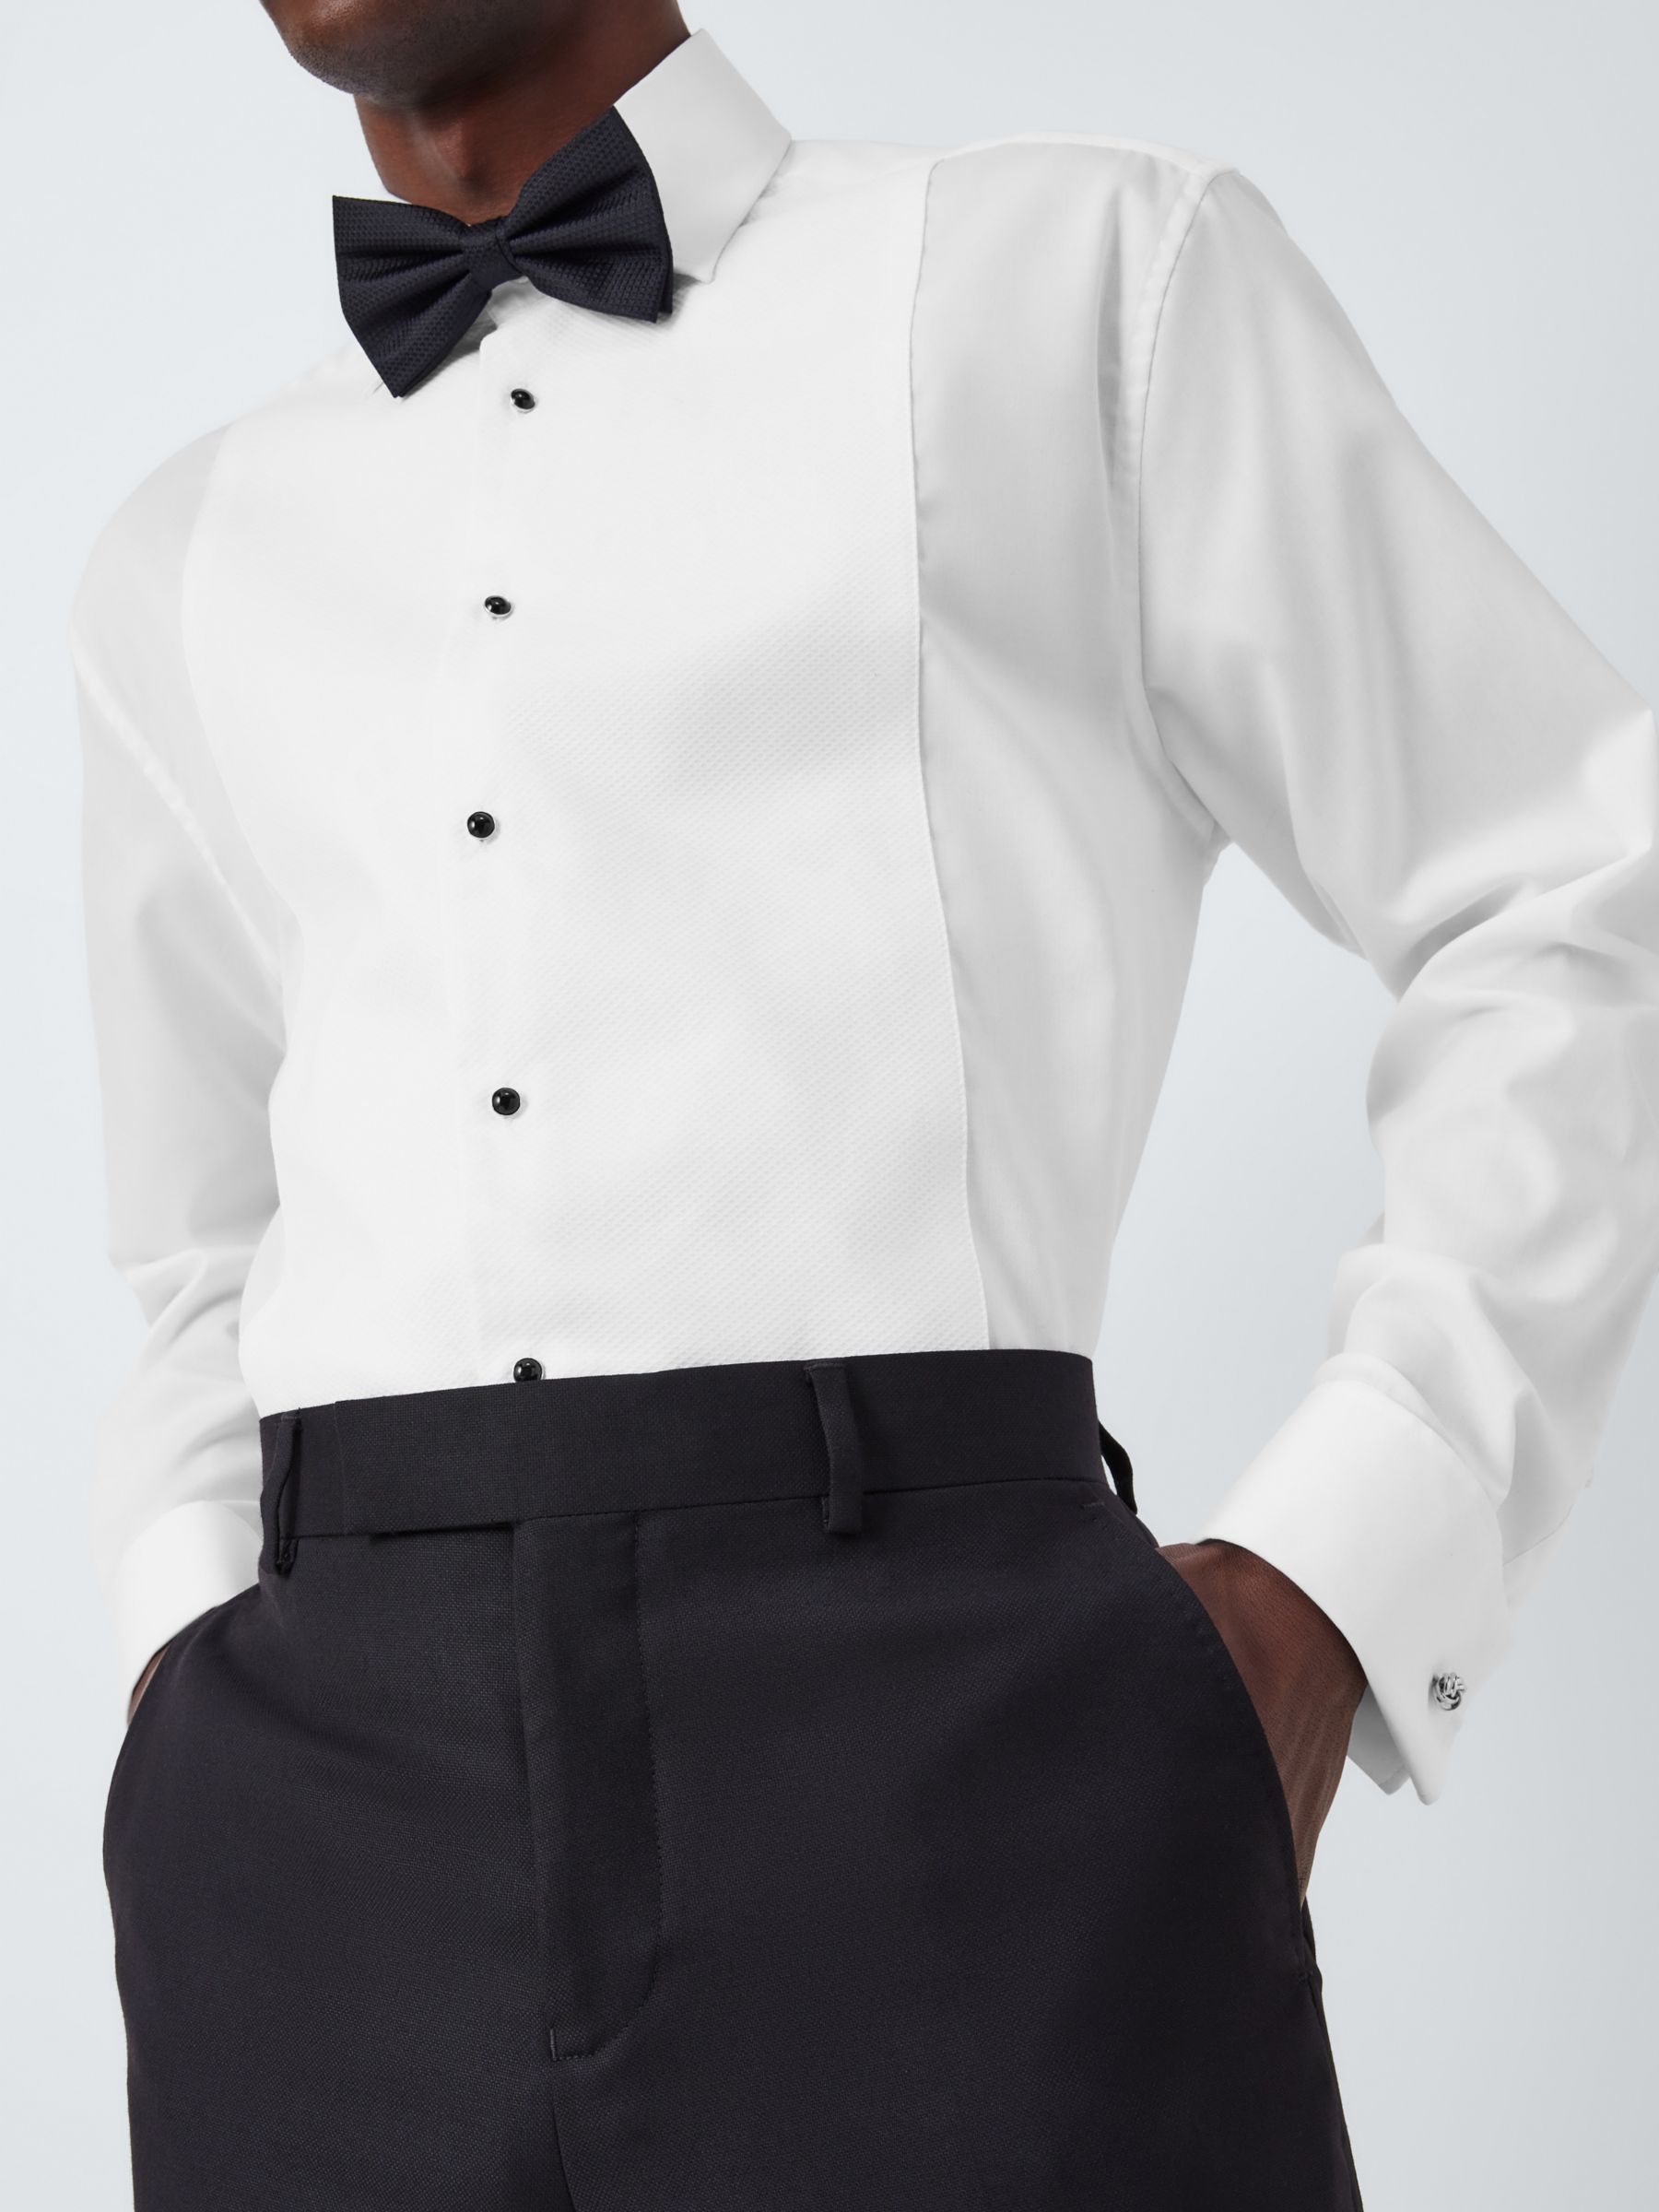 Buy John Lewis Marcella Point Collar Regular Fit Dress Shirt, White Online at johnlewis.com